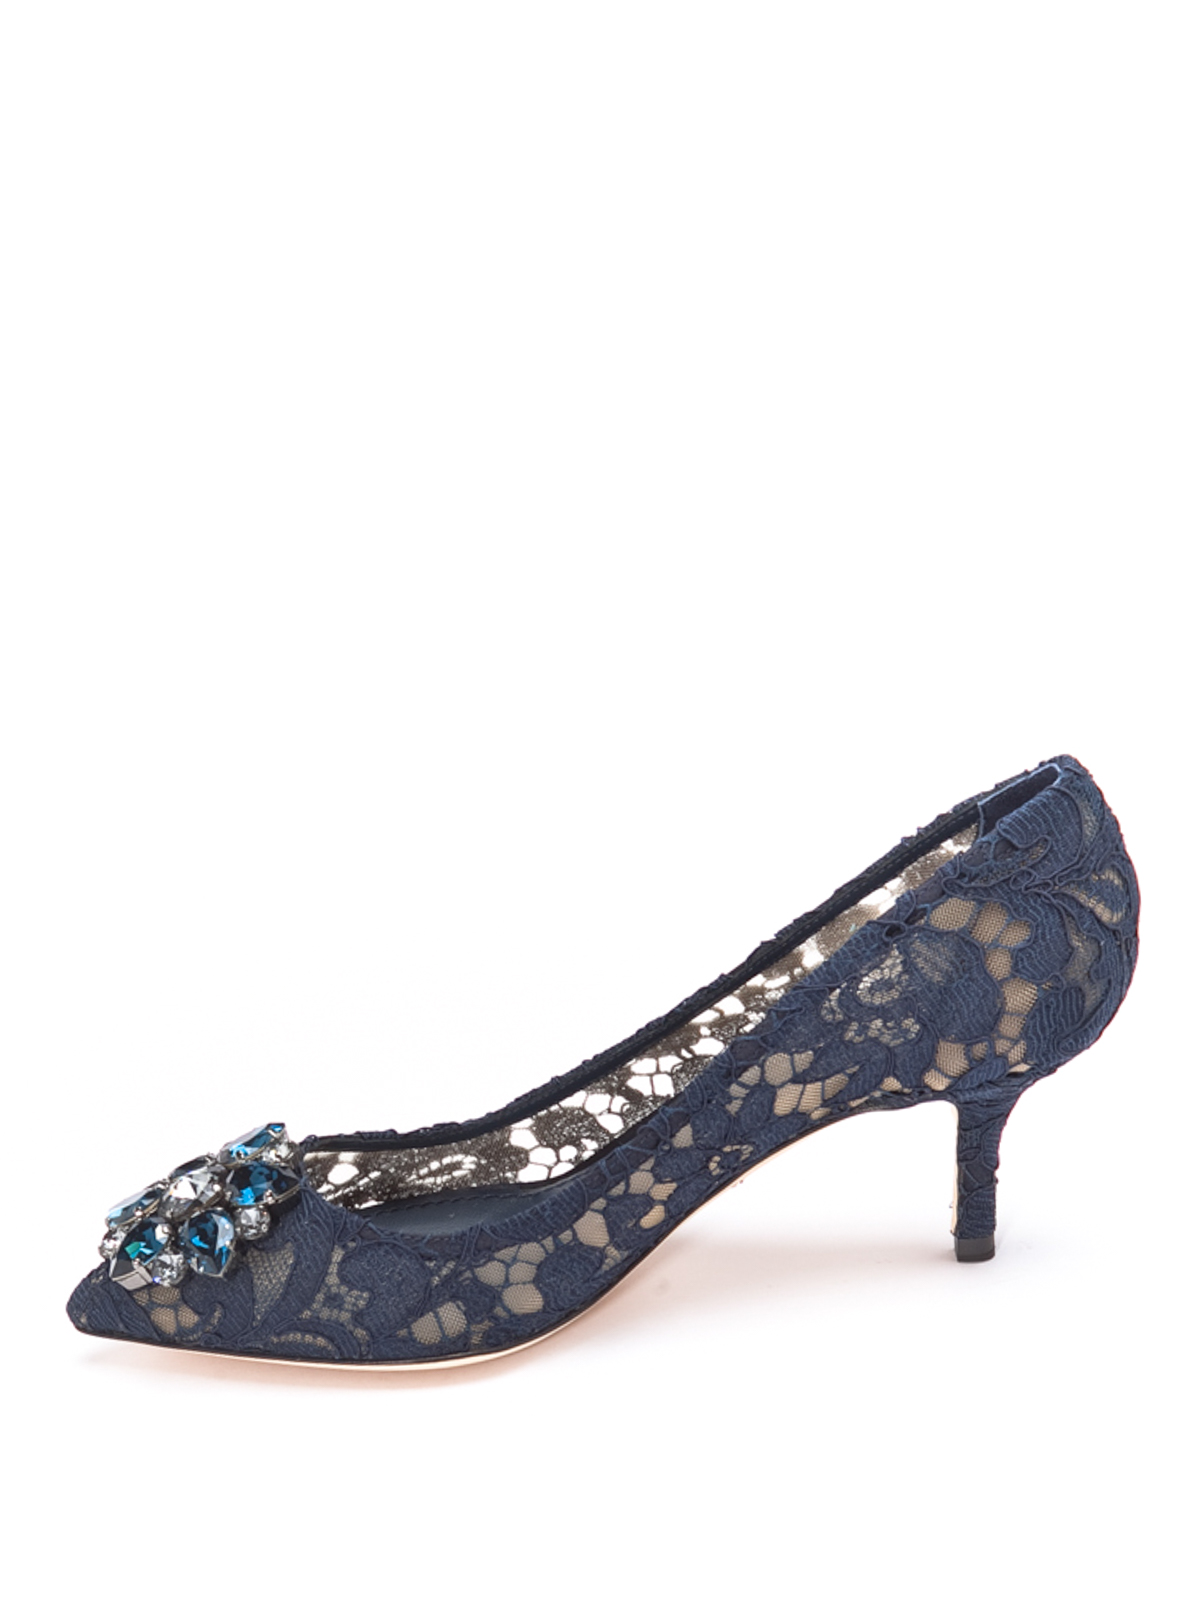 Court shoes Dolce & Gabbana - Lace jewel court shoes - CD0066AL19880652